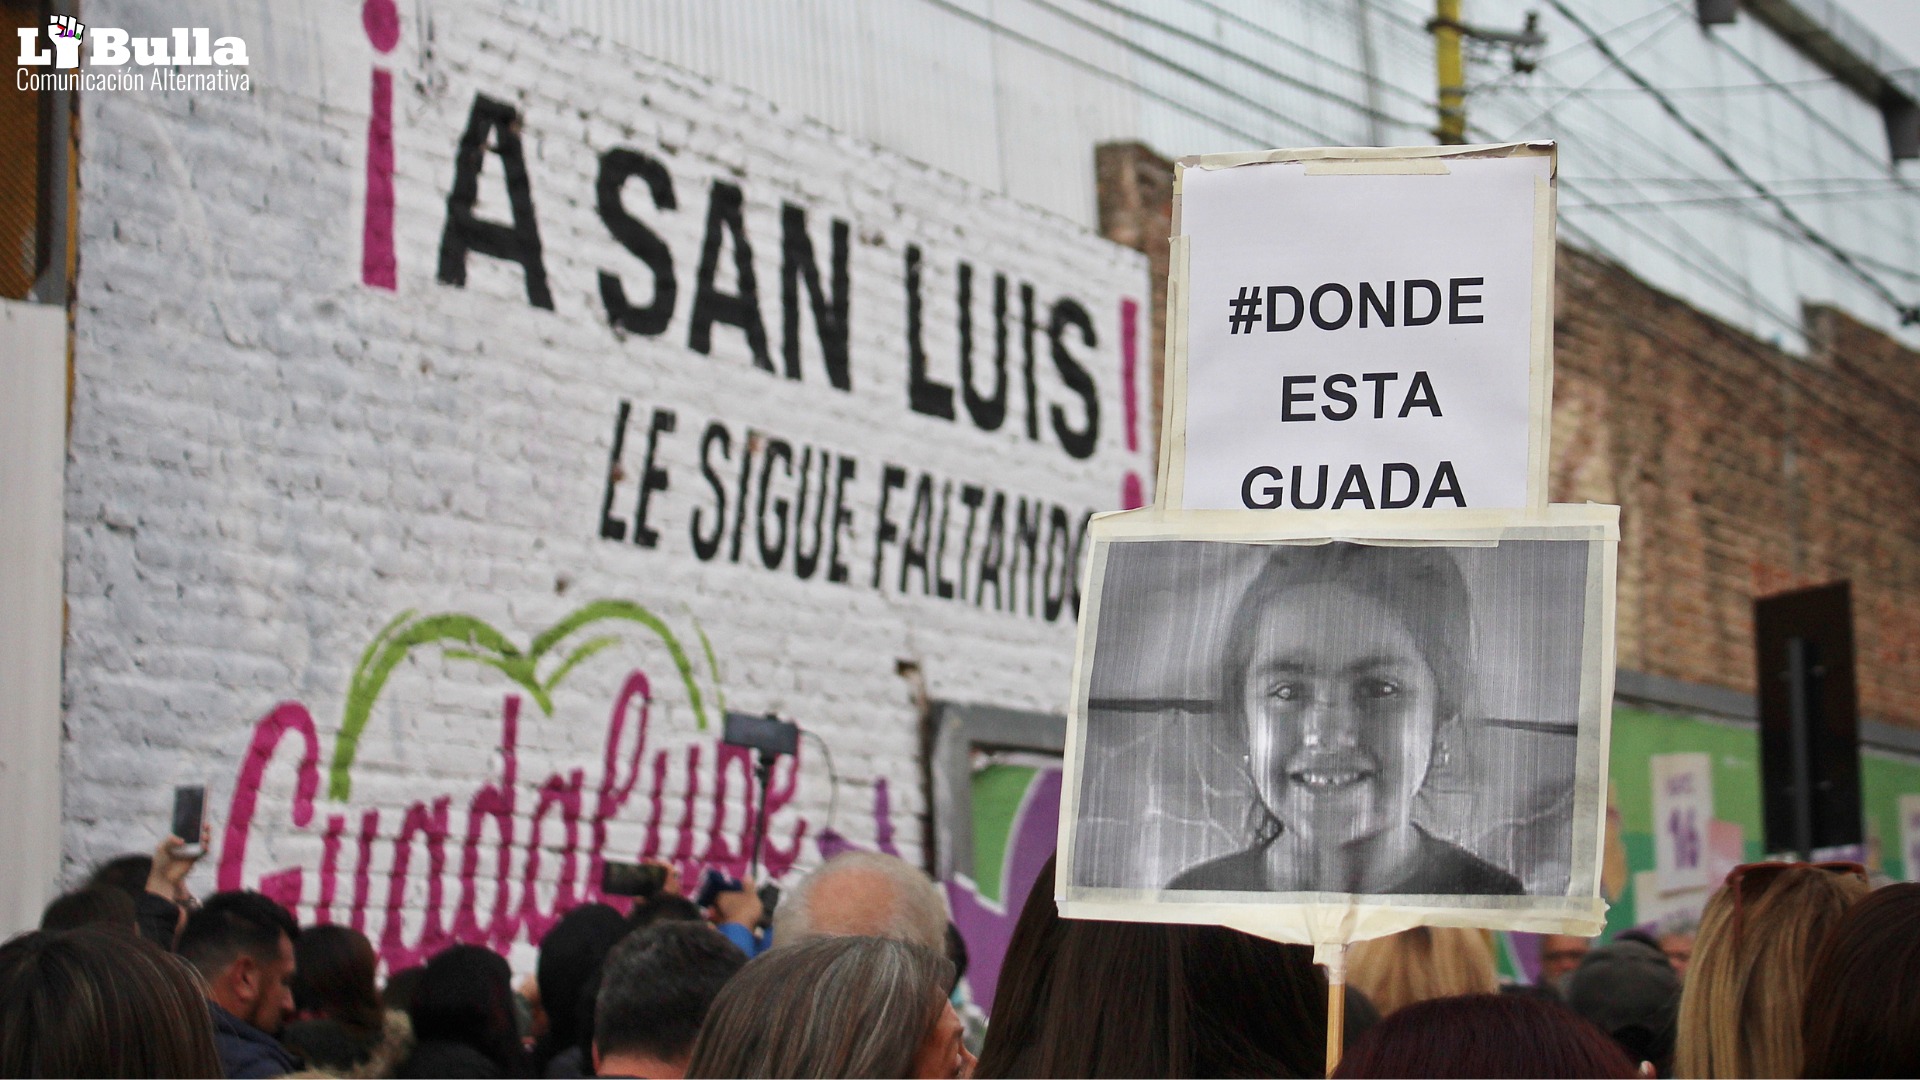 Marcha por Guadalupe Belen Lucero Cialone, niña raptada en San Luis el 14 de junio de 2021